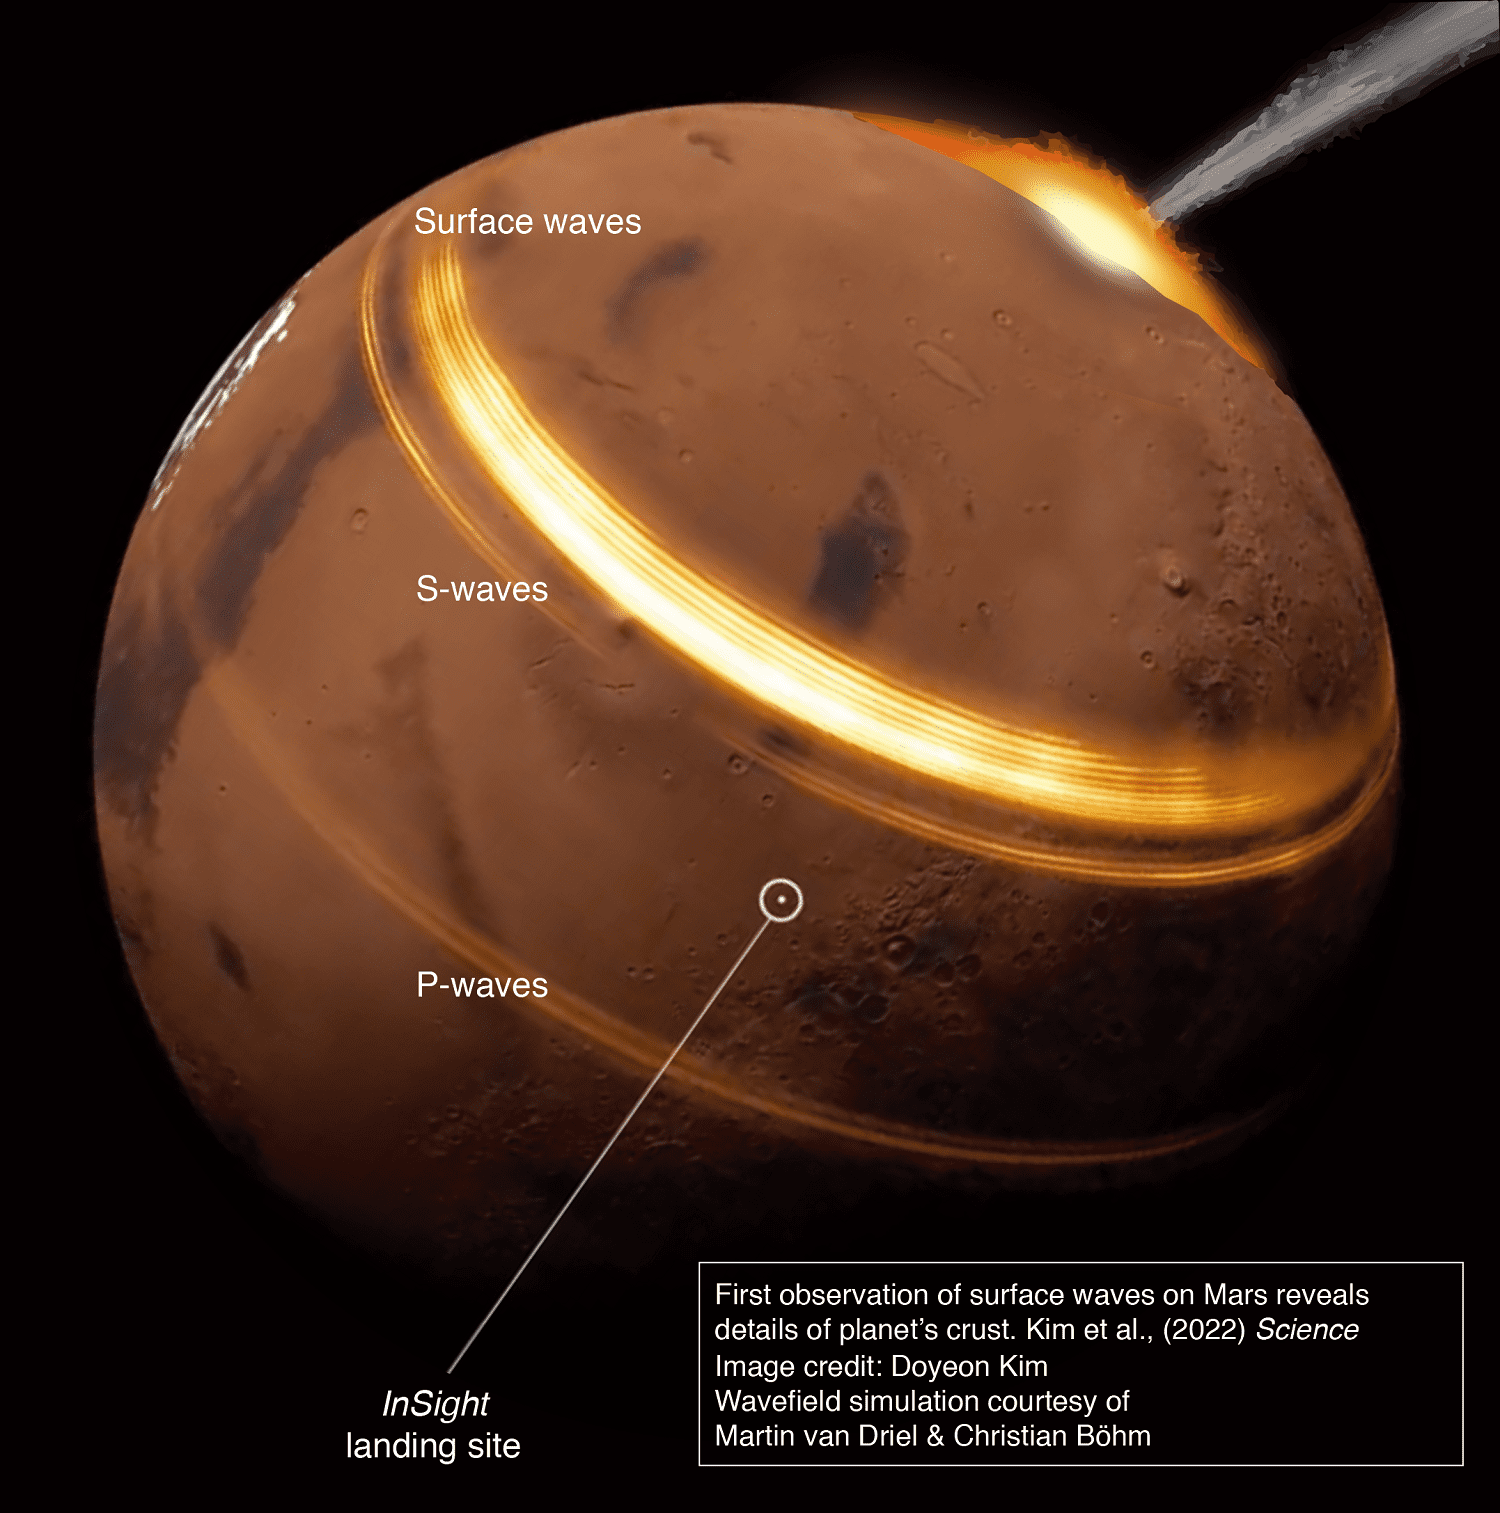 رسم تخطيطي لكوكب المريخ يوضح موقع الاصطدام النيزكي و3 أنواع من الموجات الزلزالية، الموجات السطحية والموجات الباطنية وموجات بي.